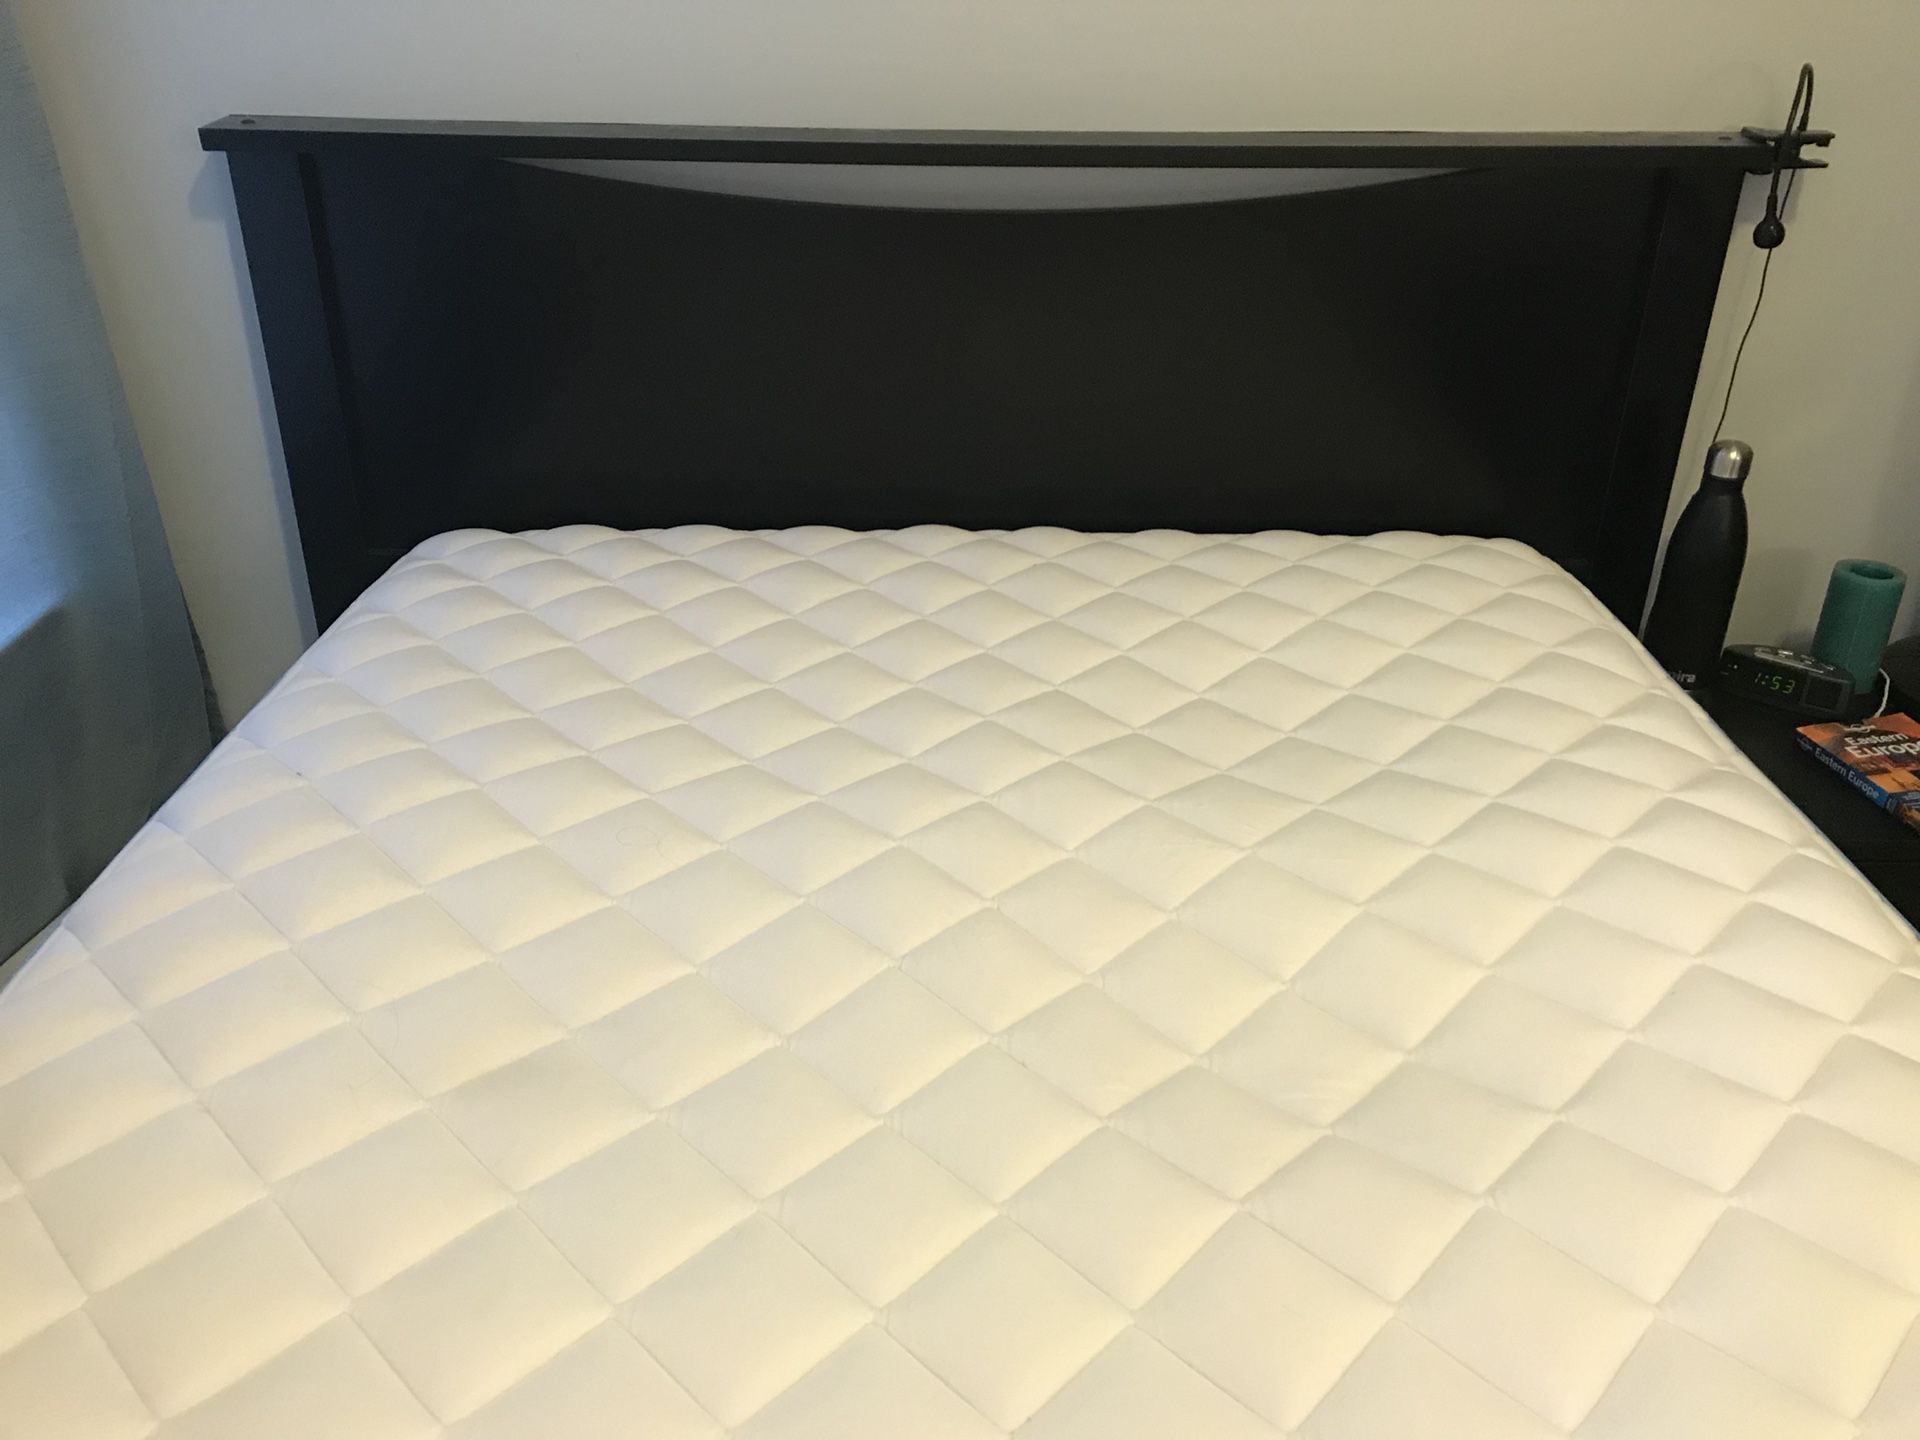 Pillow top mattress (Full), box spring, headboard, frame